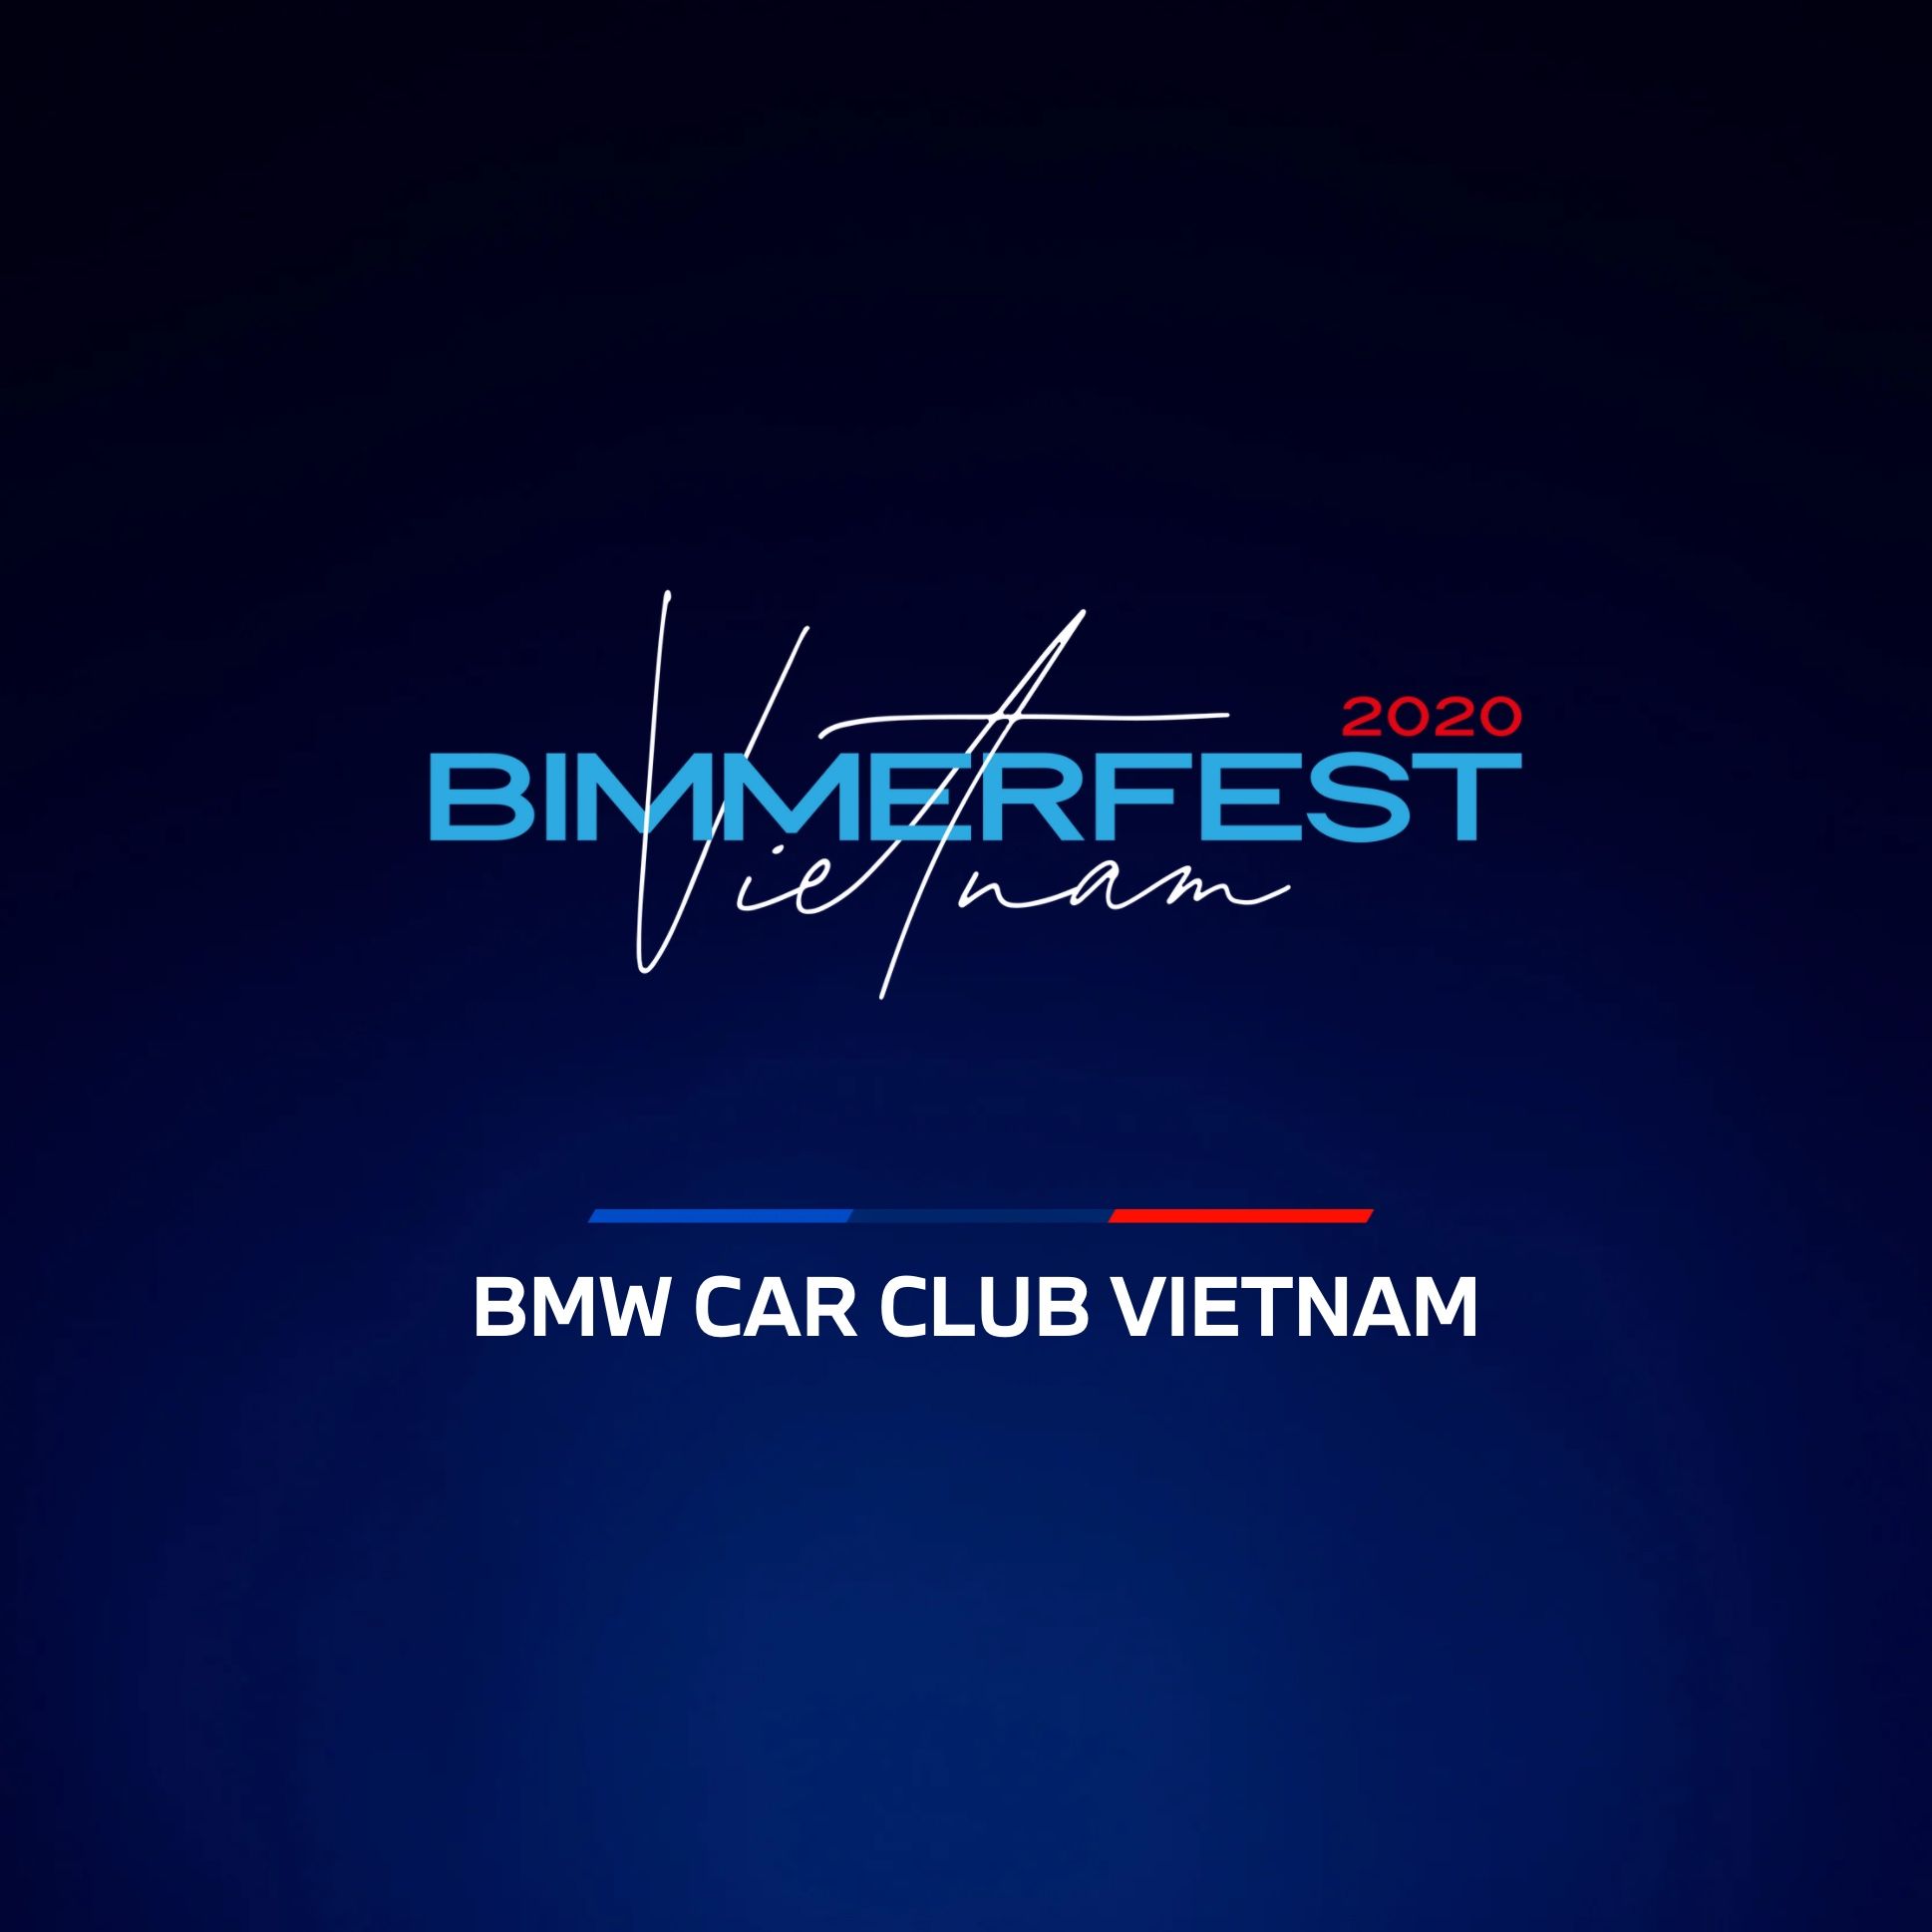 Thông báo về BIMMERFEST VIETNAM 2020 - sự kiện lớn nhất trong năm của BMW Car Club Vietnam